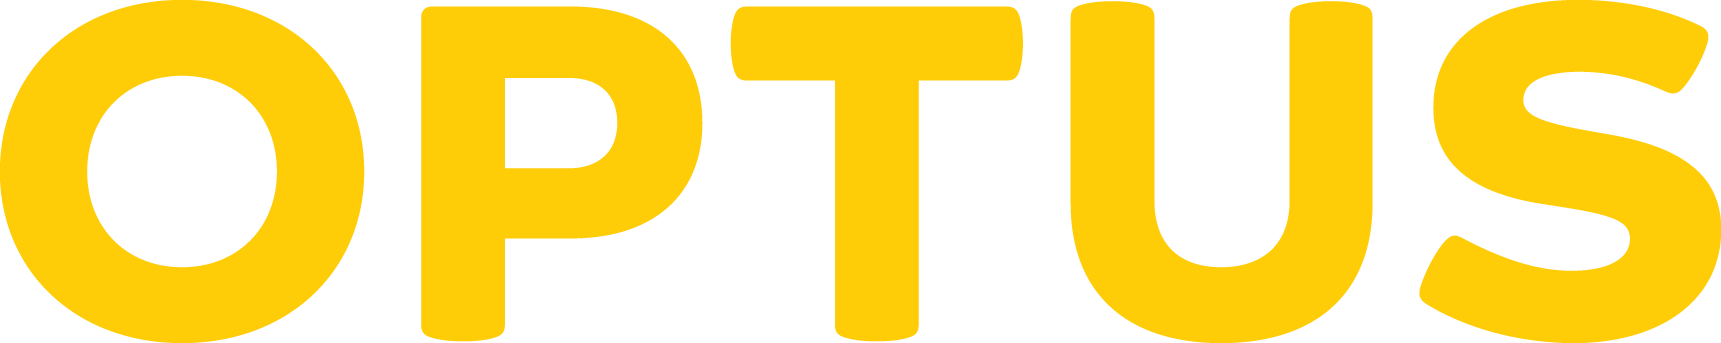 Yellow Company Logo - Logos